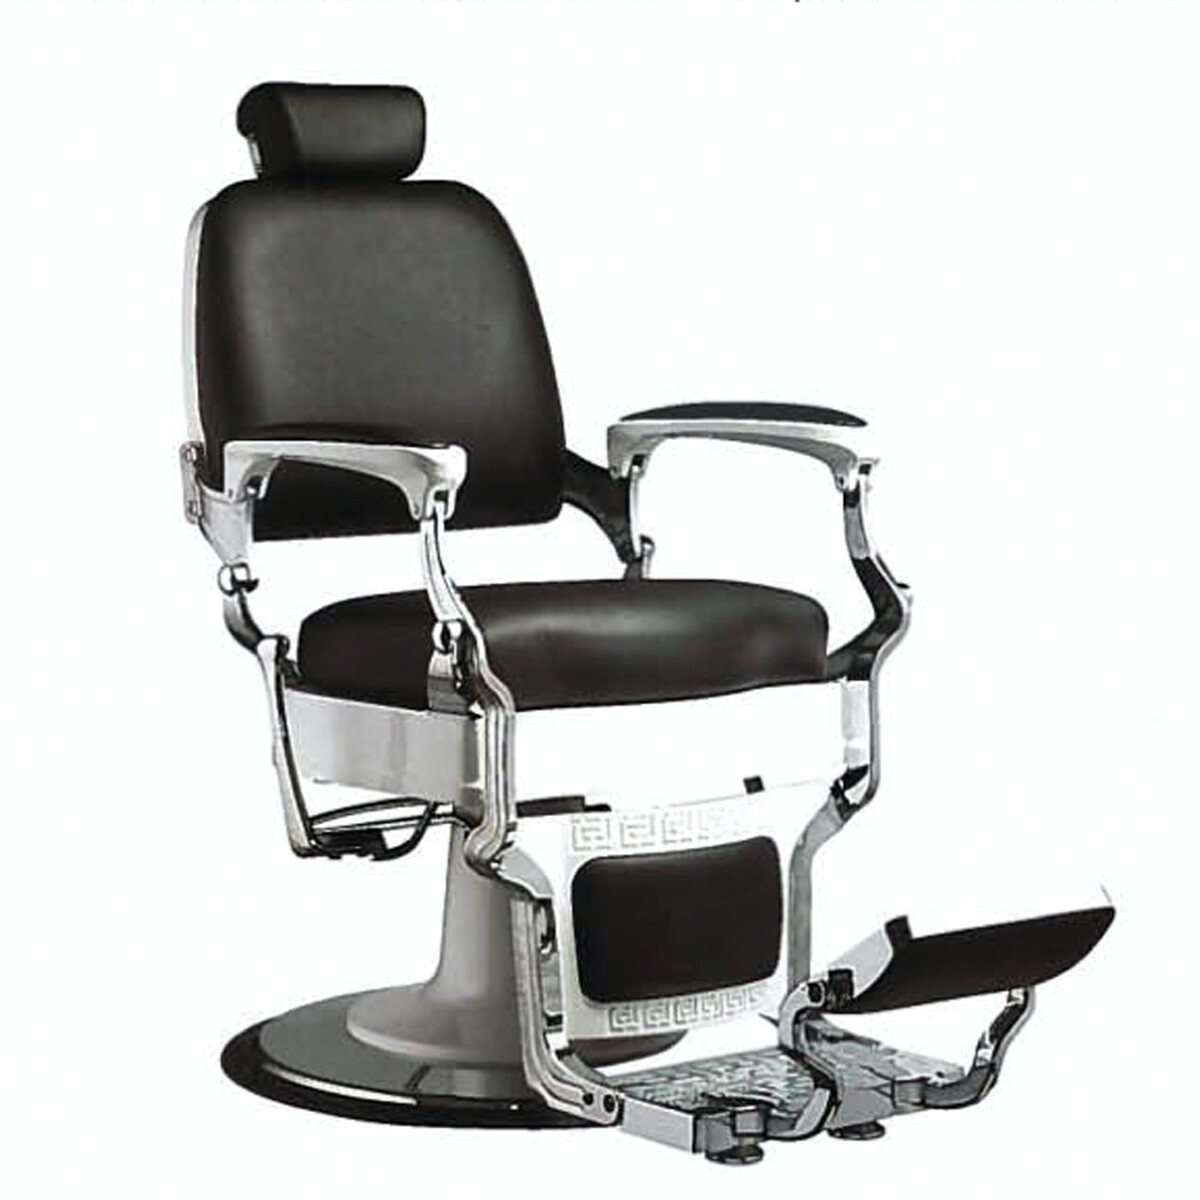 PROMO: Cadeira de Barbeiro Clássica